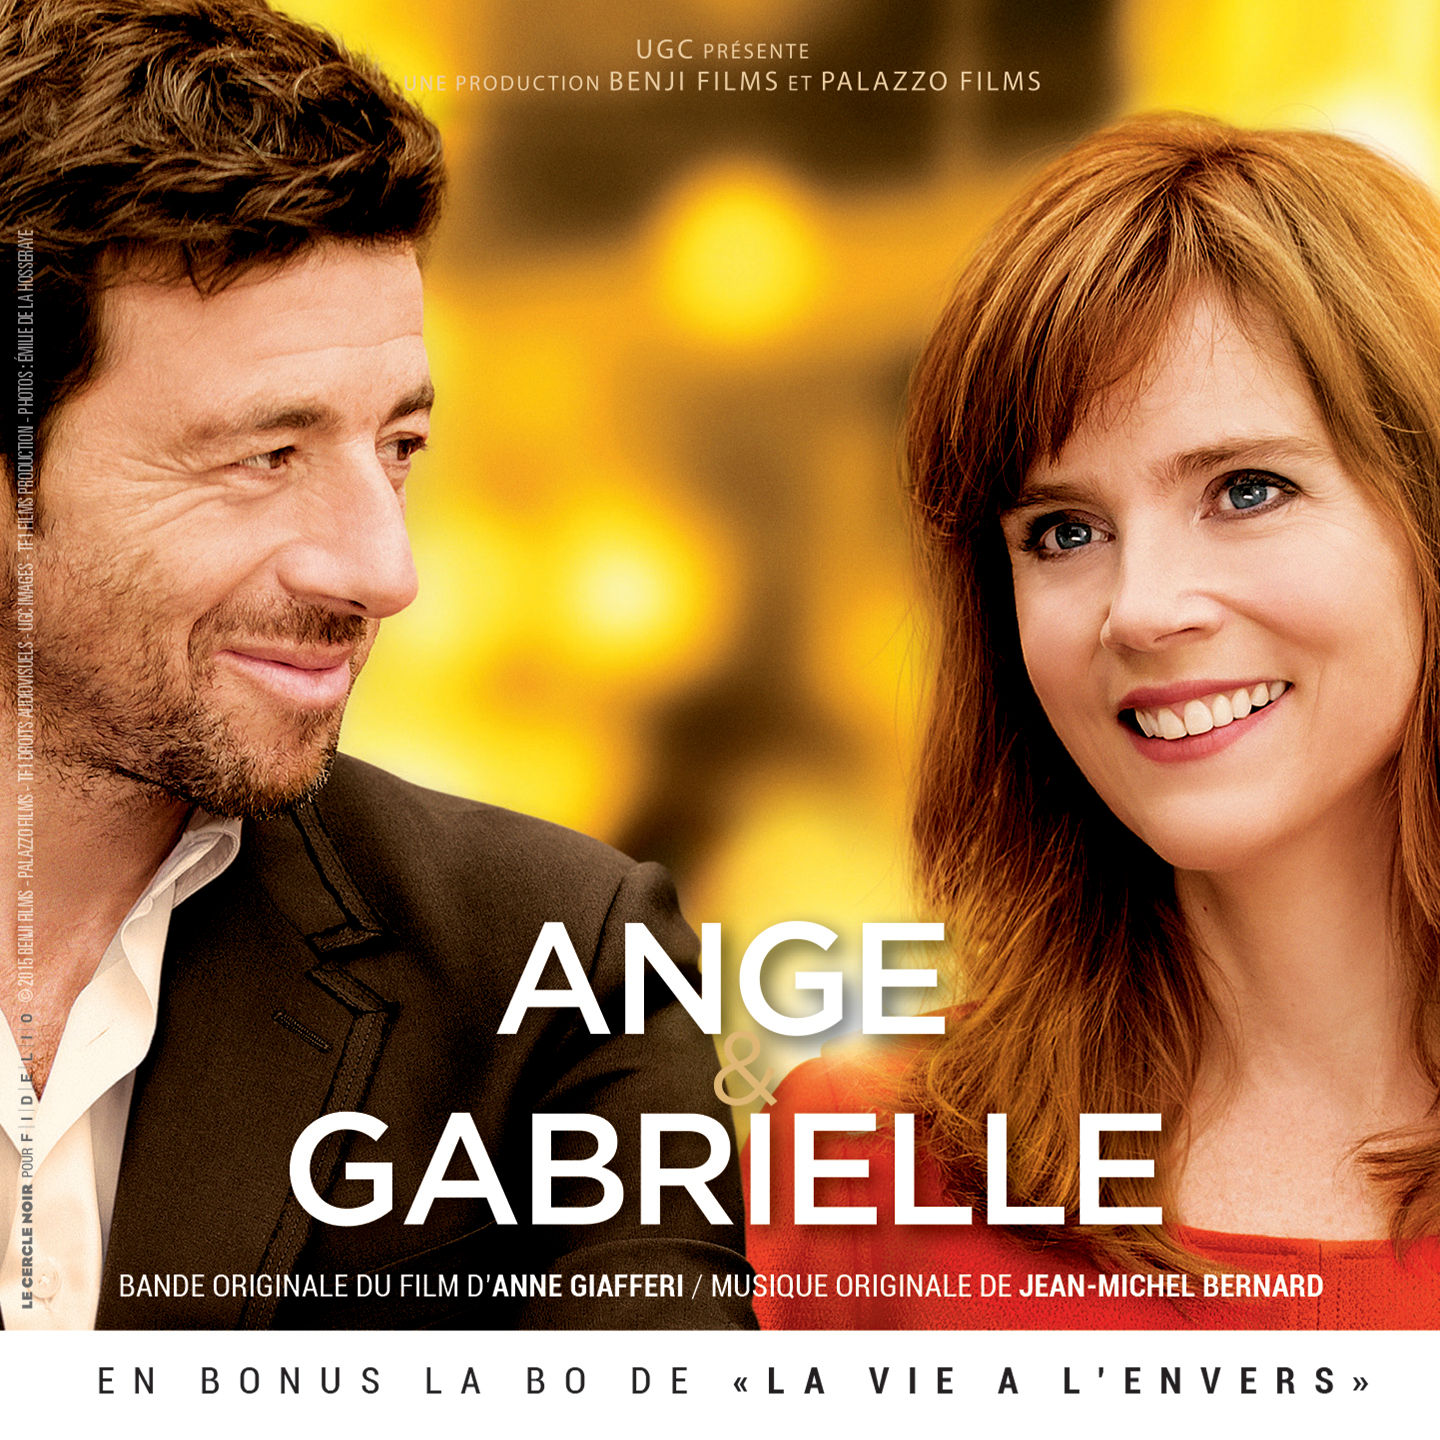 Ange & Gabrielle - La Vie  lEnvers